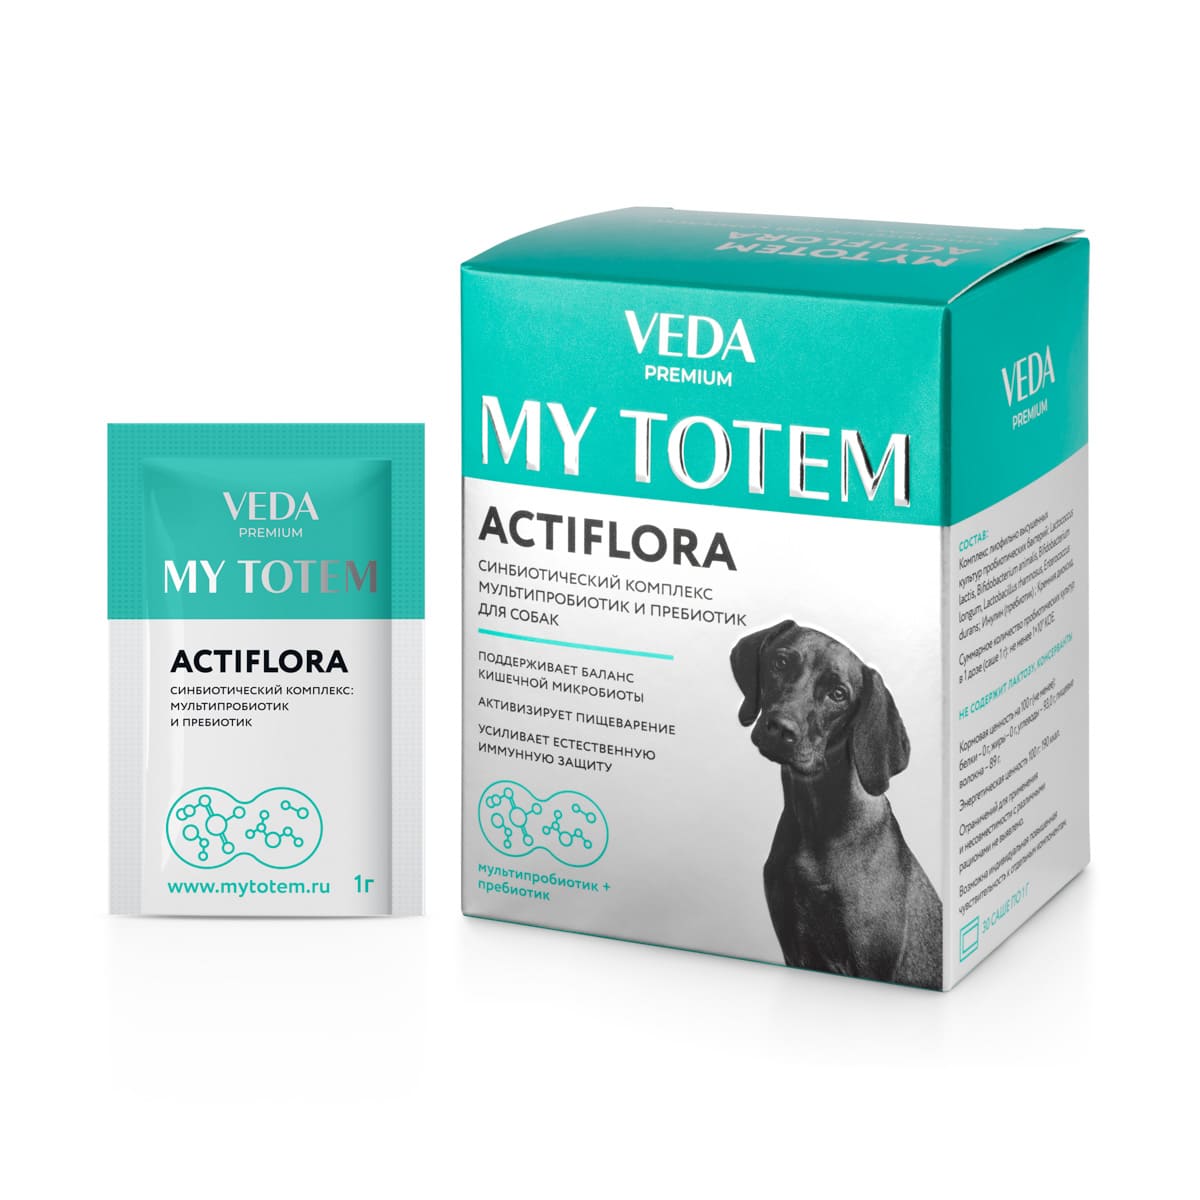 синбиотический комплекс "my totem actiflora"(актифлора) для собак